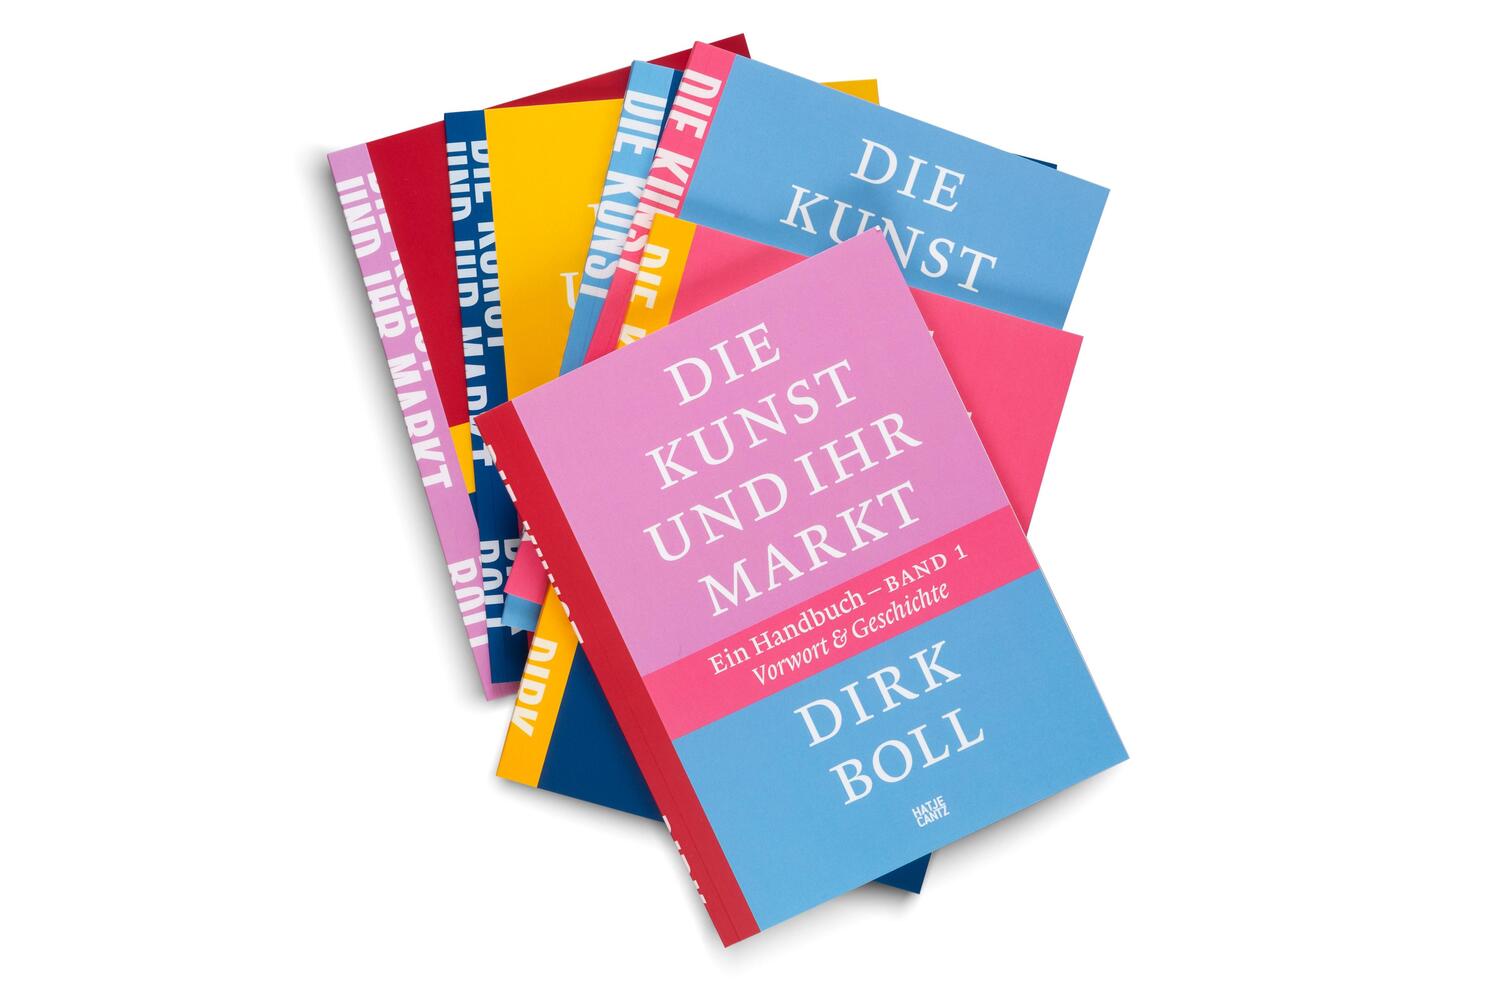 Bild: 9783775754538 | Die Kunst und ihr Markt | Dirk Boll | Buch | 456 S. | Deutsch | 2024